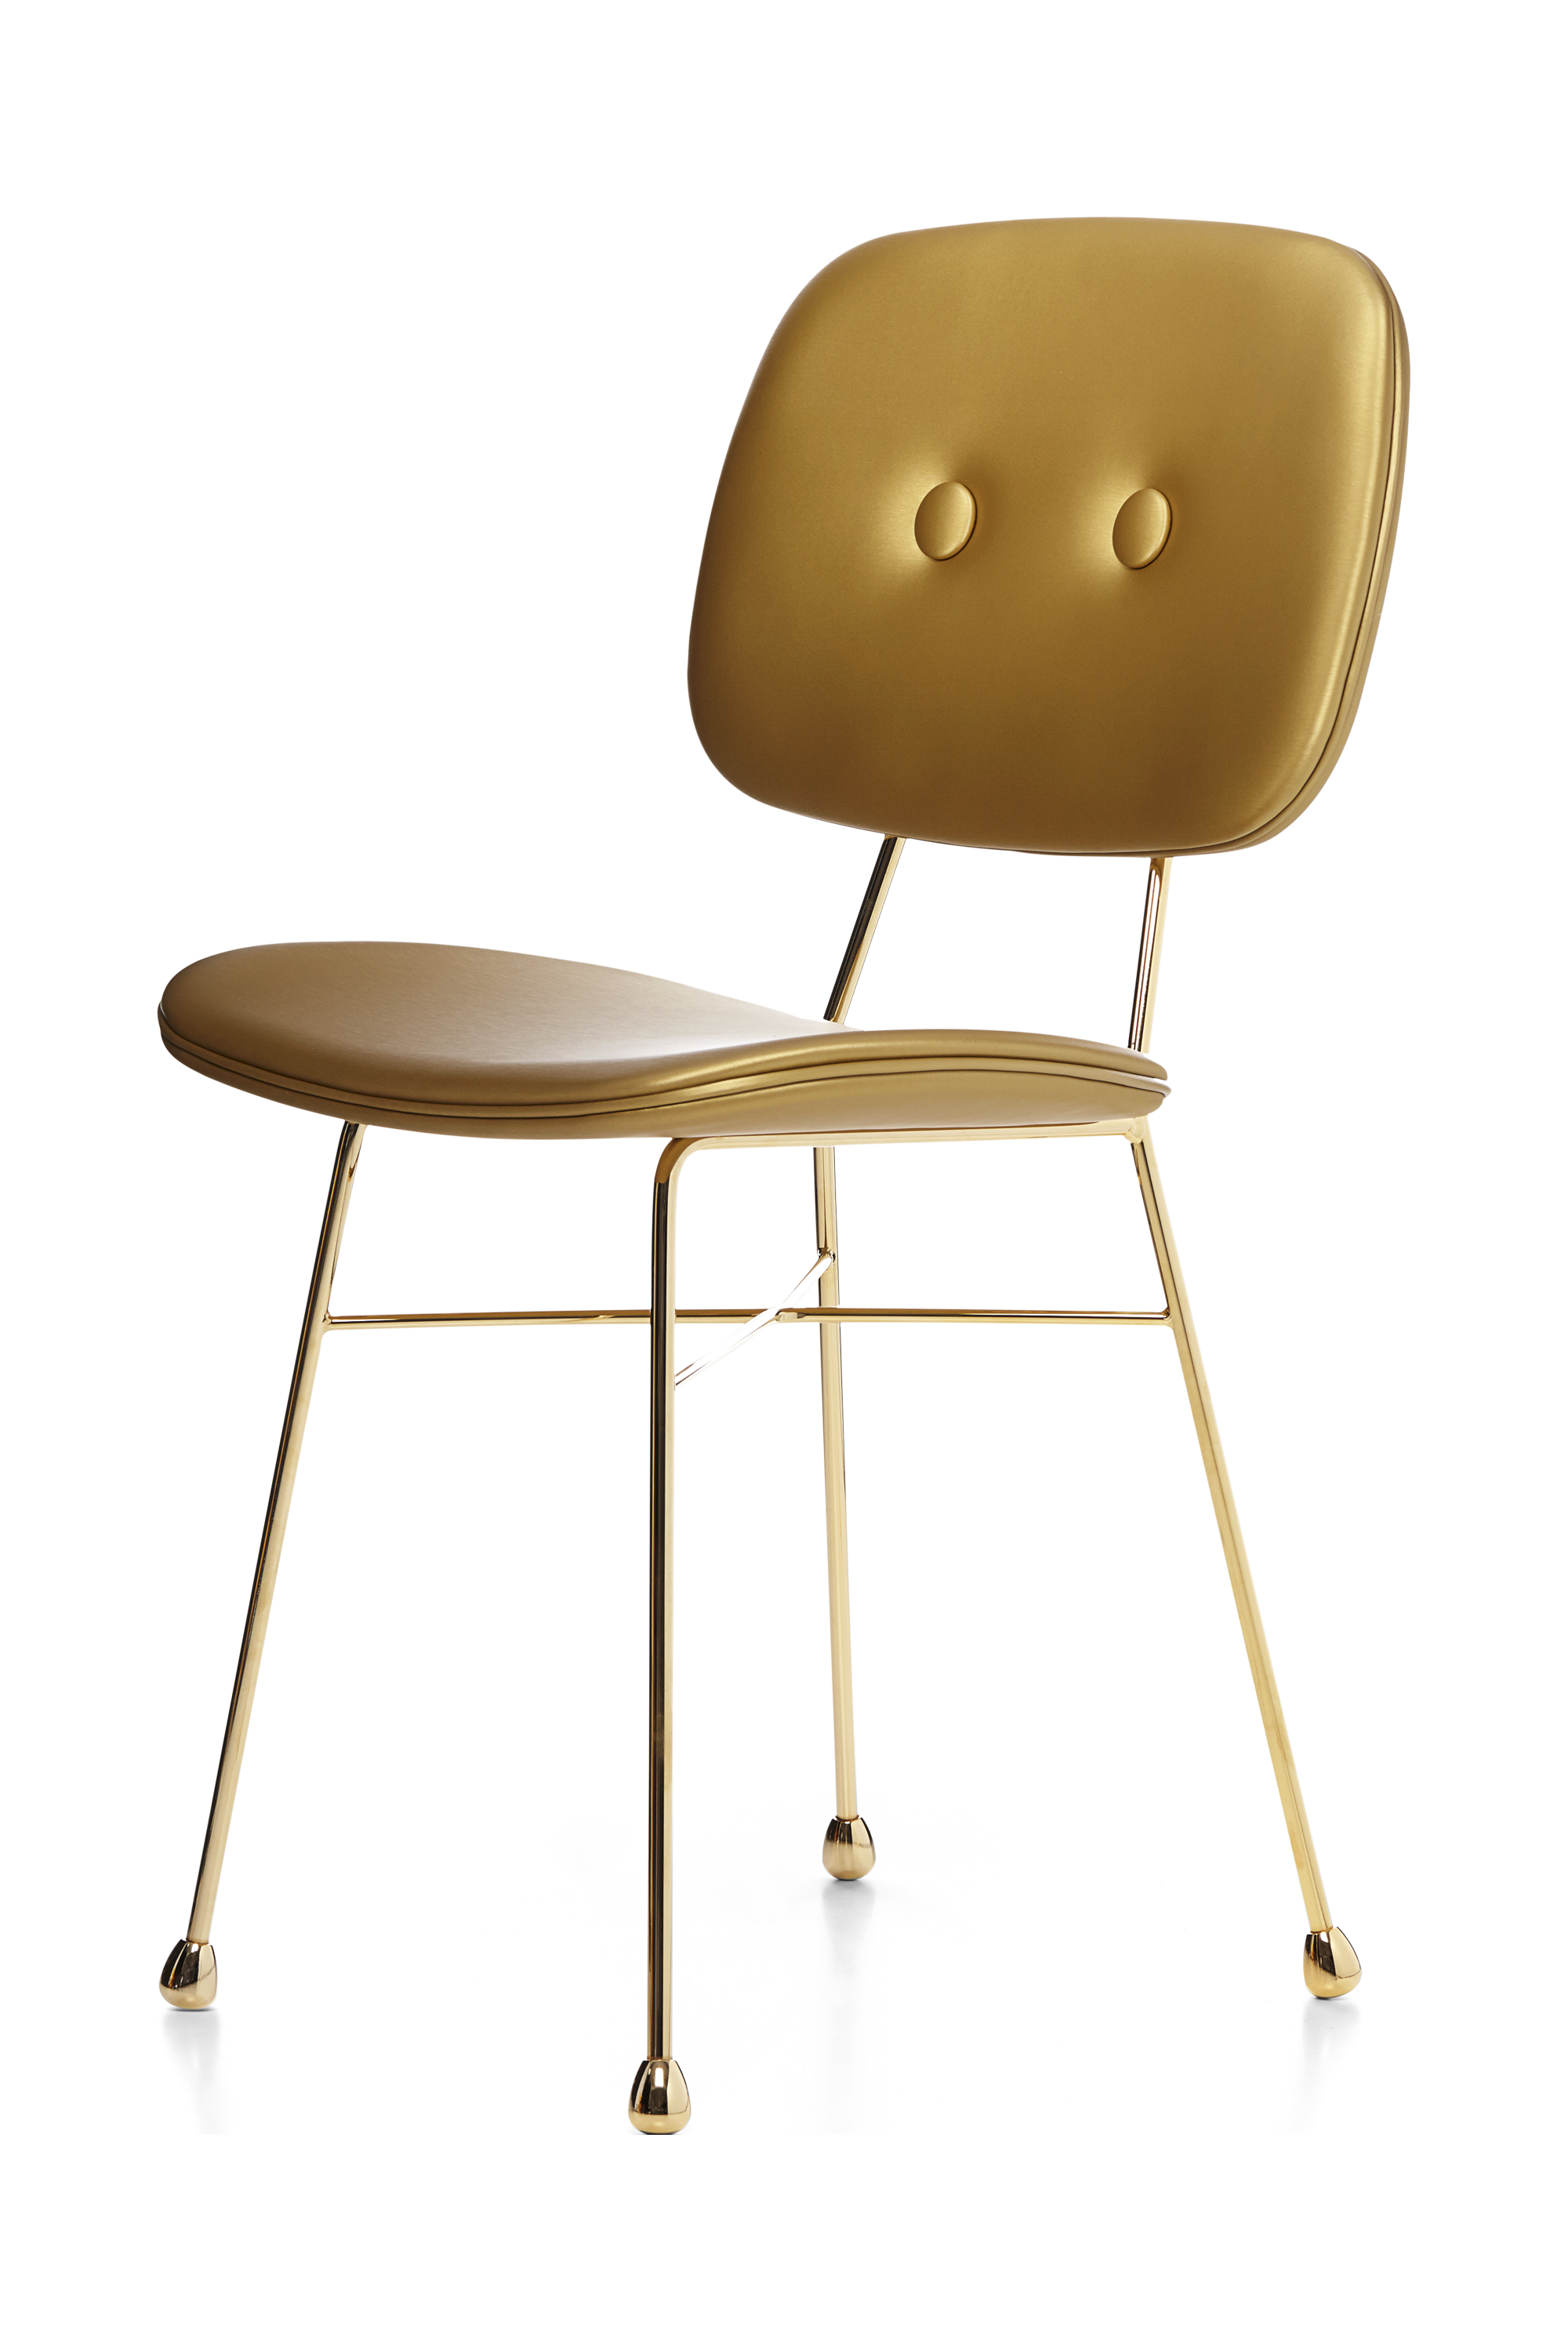 The Golden Chair matt gold right view